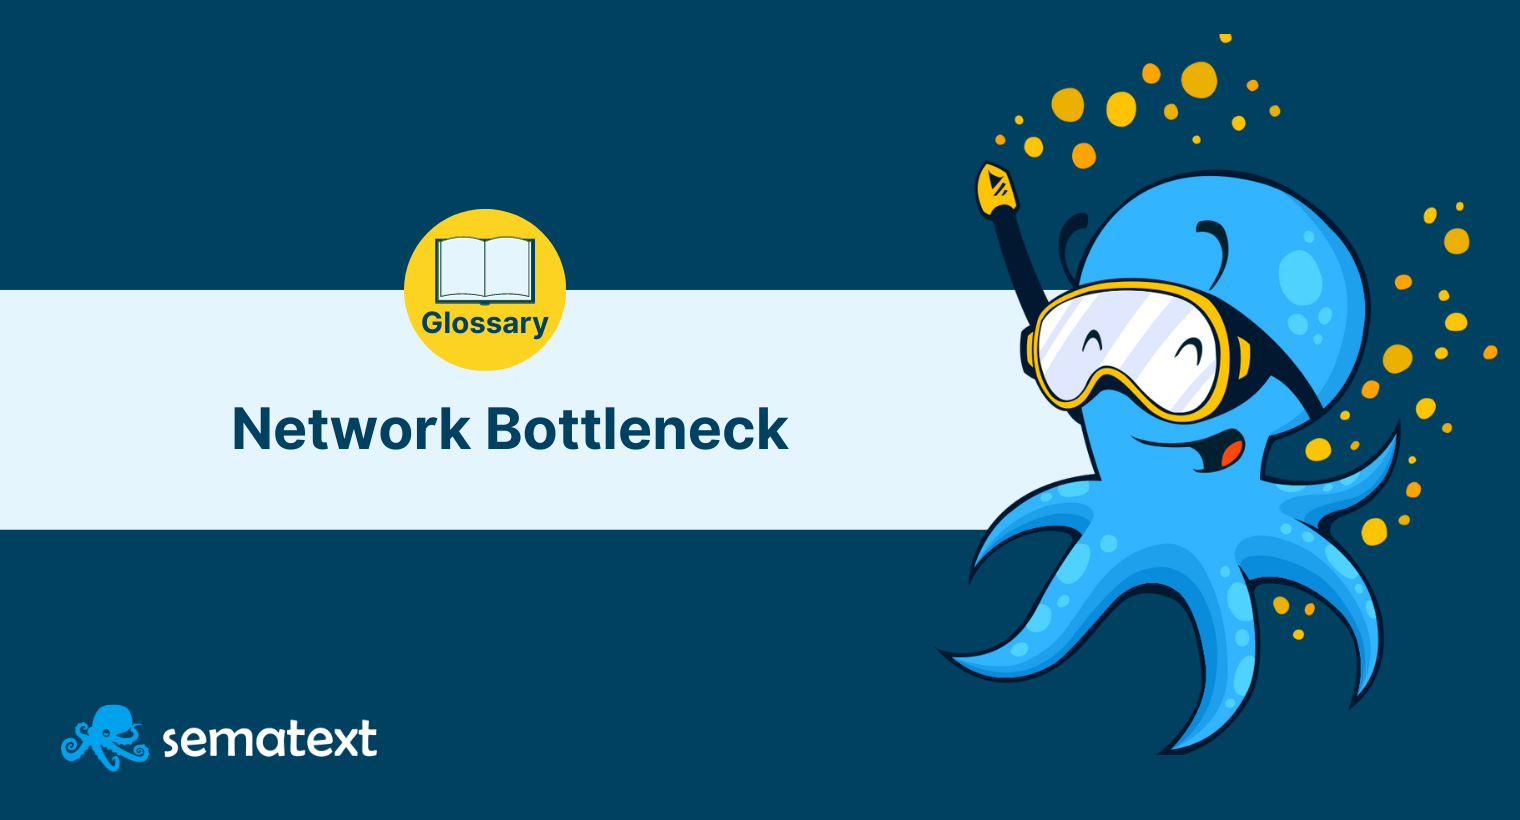 Network Bottleneck